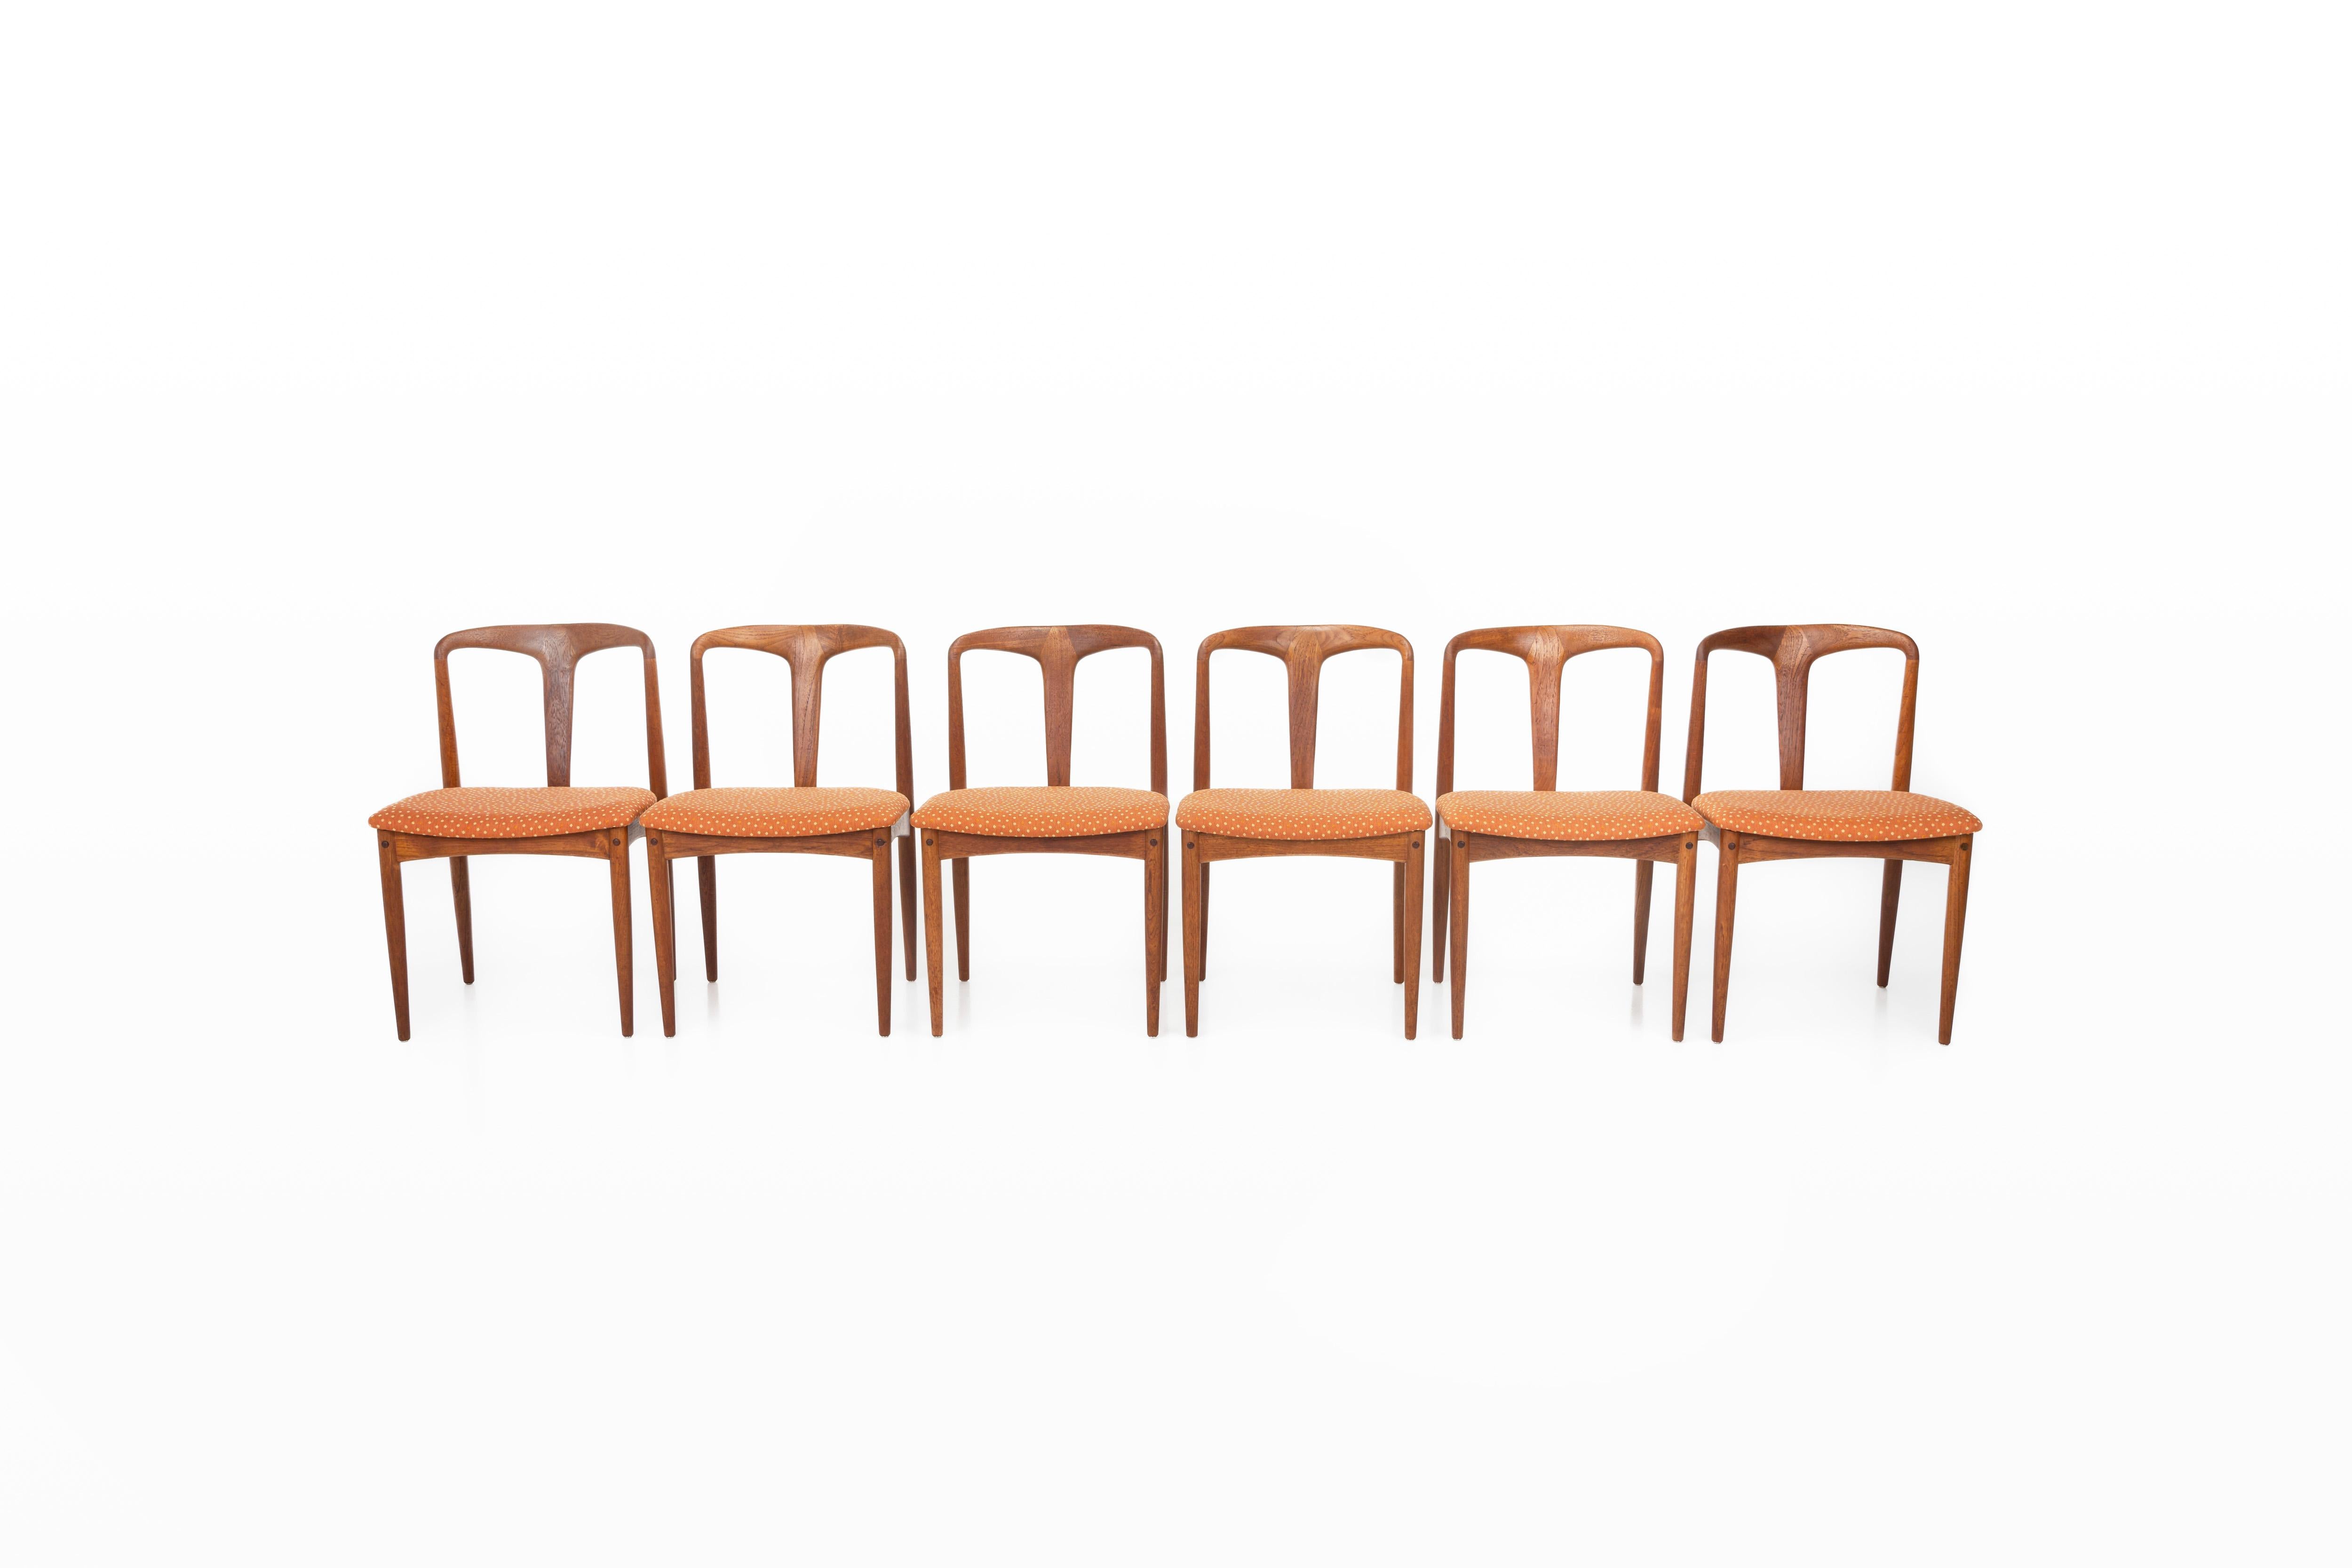 6 Stühle für das Esszimmer 'Juliane' im Vintage-Stil. Diese Stühle wurden von Johannes Andersen für die Uldum Møbelfabrik in Dänemark entworfen. Sie haben einen Rahmen aus Teakholz, einen orange gepunkteten Stoff und sind in sehr gutem Zustand.